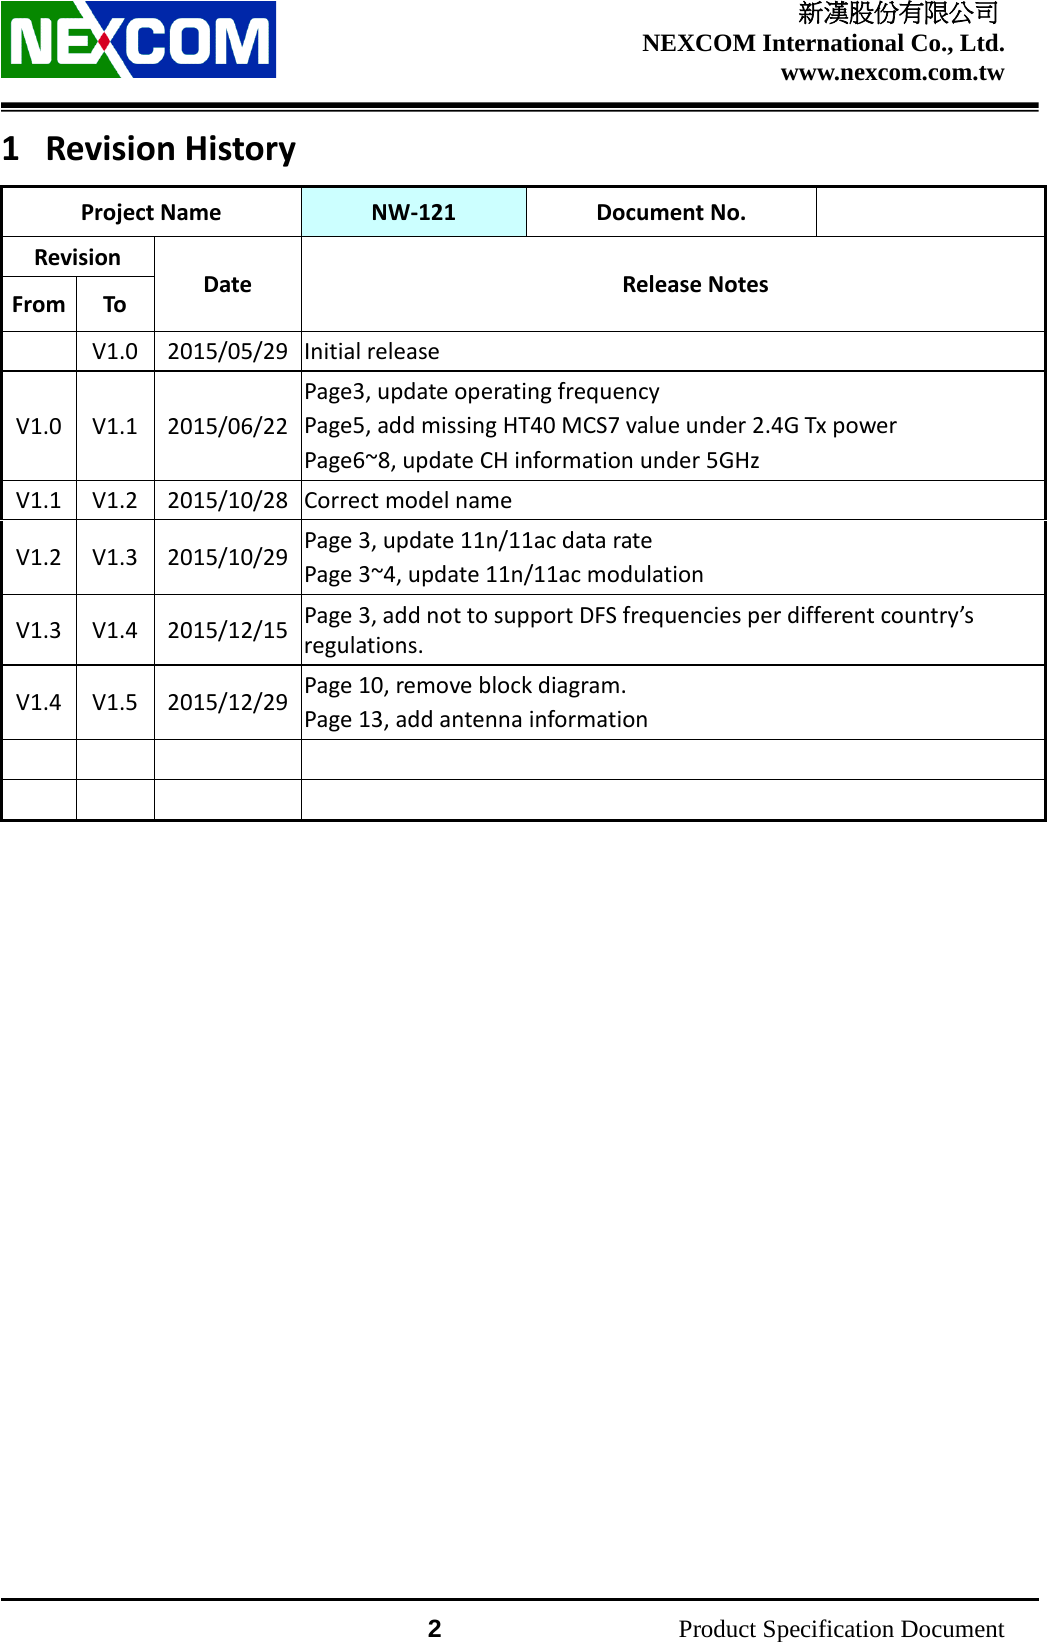    新漢股份有限公司 NEXCOM International Co., Ltd. www.nexcom.com.tw                 2          Product Specification Document 1 Revision History Project Name NW-121 Document No.  Revision Date Release Notes From To   V1.0  2015/05/29 Initial release   V1.0 V1.1 2015/06/22 Page3, update operating frequency Page5, add missing HT40 MCS7 value under 2.4G Tx power Page6~8, update CH information under 5GHz V1.1 V1.2 2015/10/28 Correct model name V1.2 V1.3 2015/10/29 Page 3, update 11n/11ac data rate Page 3~4, update 11n/11ac modulation V1.3 V1.4 2015/12/15 Page 3, add not to support DFS frequencies per different country’s regulations. V1.4 V1.5 2015/12/29 Page 10, remove block diagram. Page 13, add antenna information                